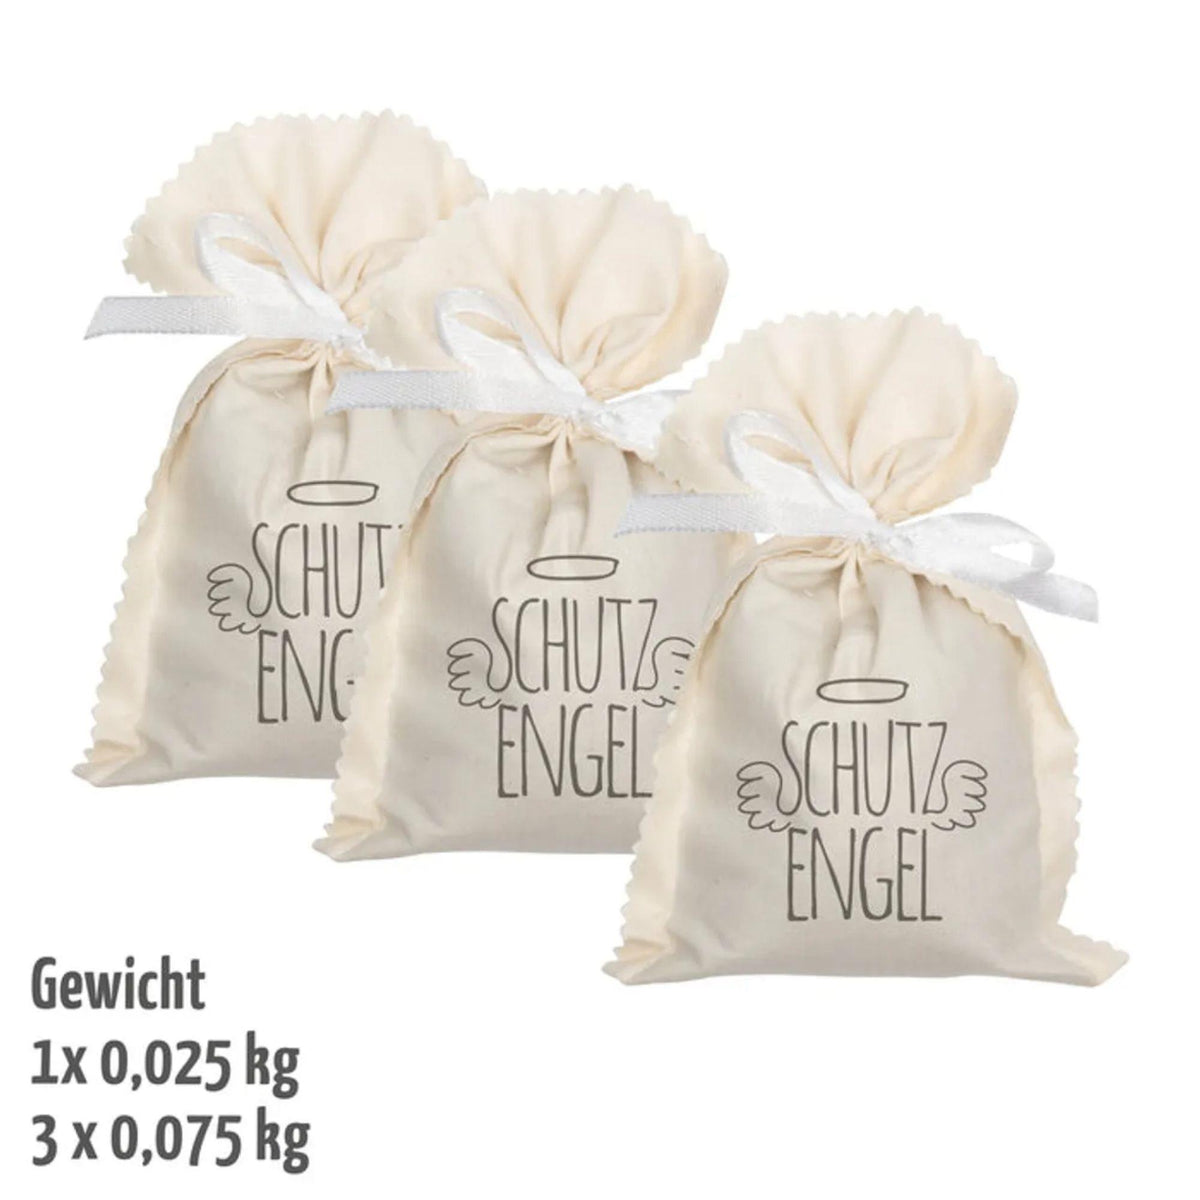 Lavendelduftsäckchen, Schutzengel, 10x10cm 1140SET_1